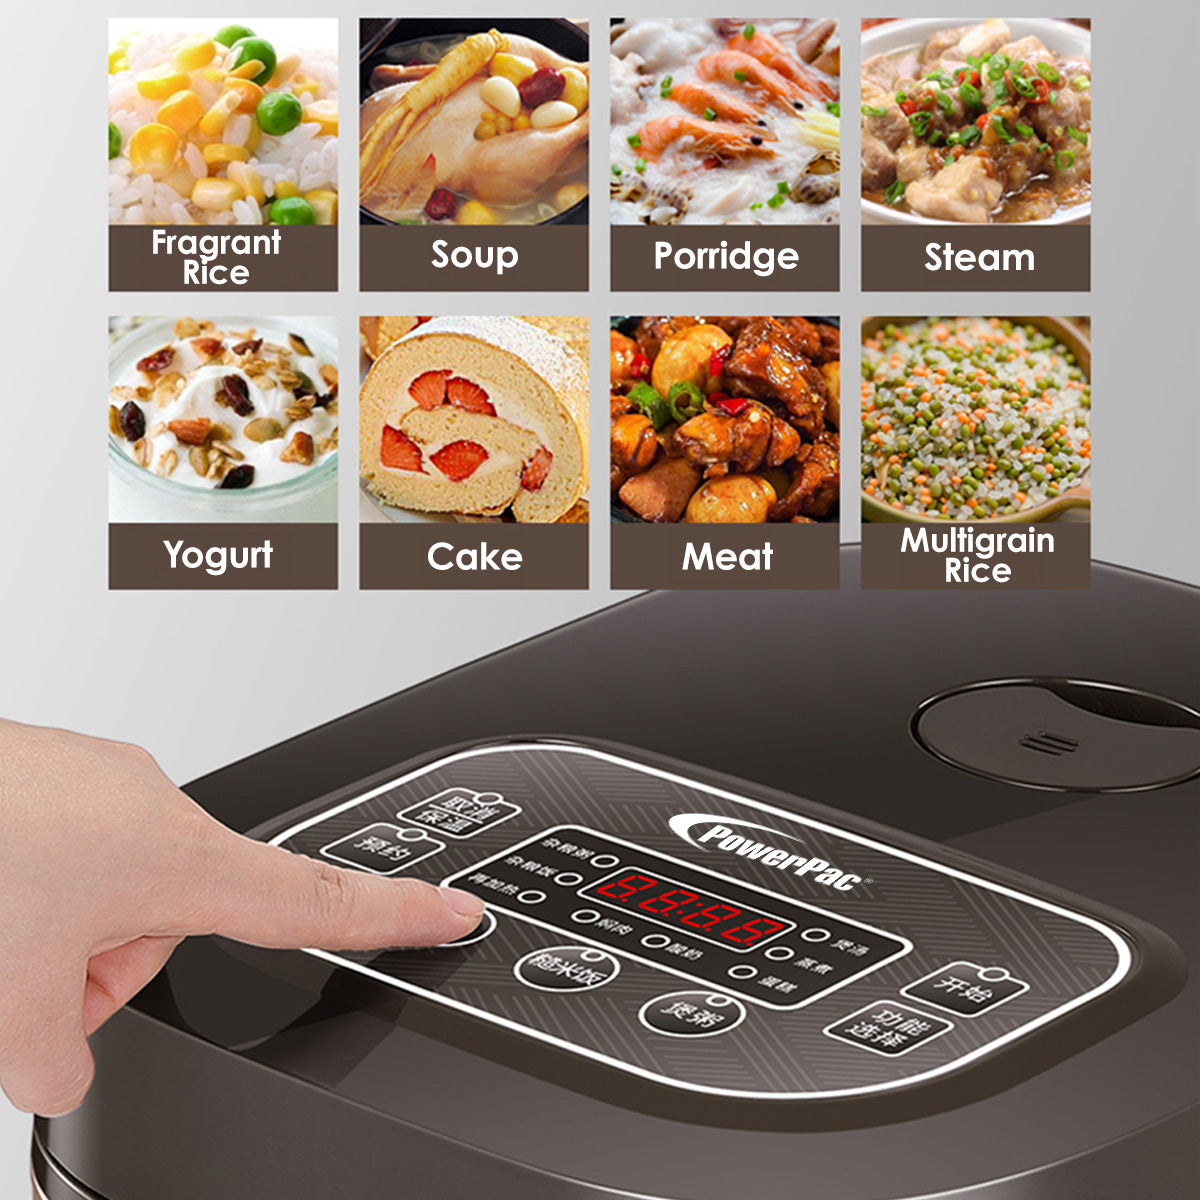 Multi-Purpose Digital Rice Cooker 1.5L with Non-stick Inner Pot (PPRC312)